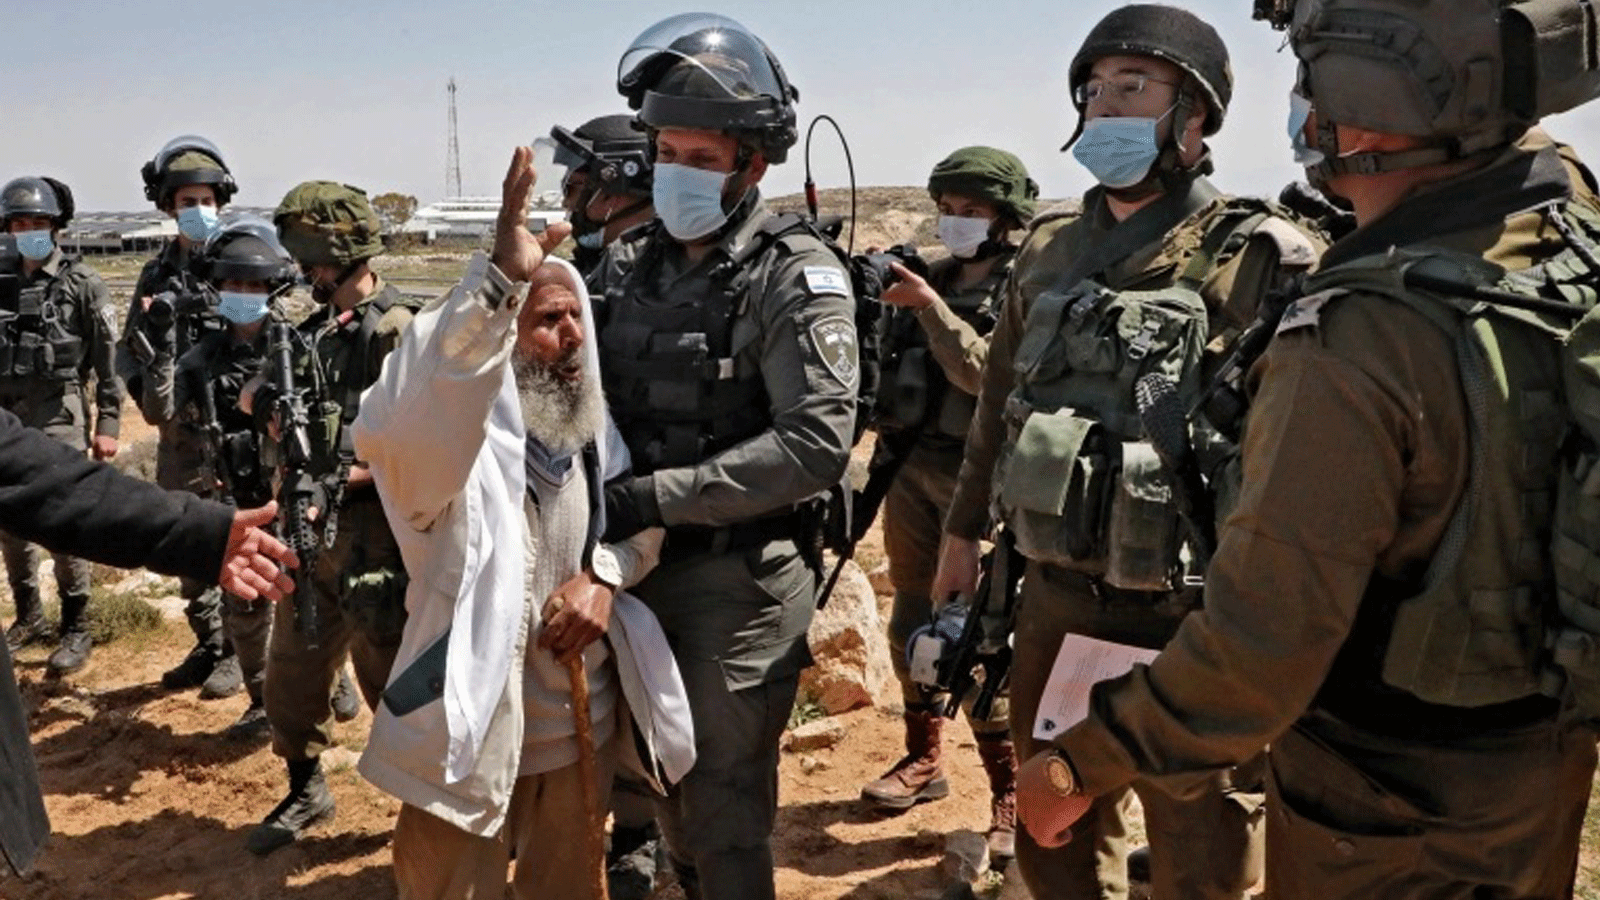 فلسطيني مسن يحتج على مصادرة الأراضي لصالح مستوطنة كرمل في الضفة الغربية المحتلة